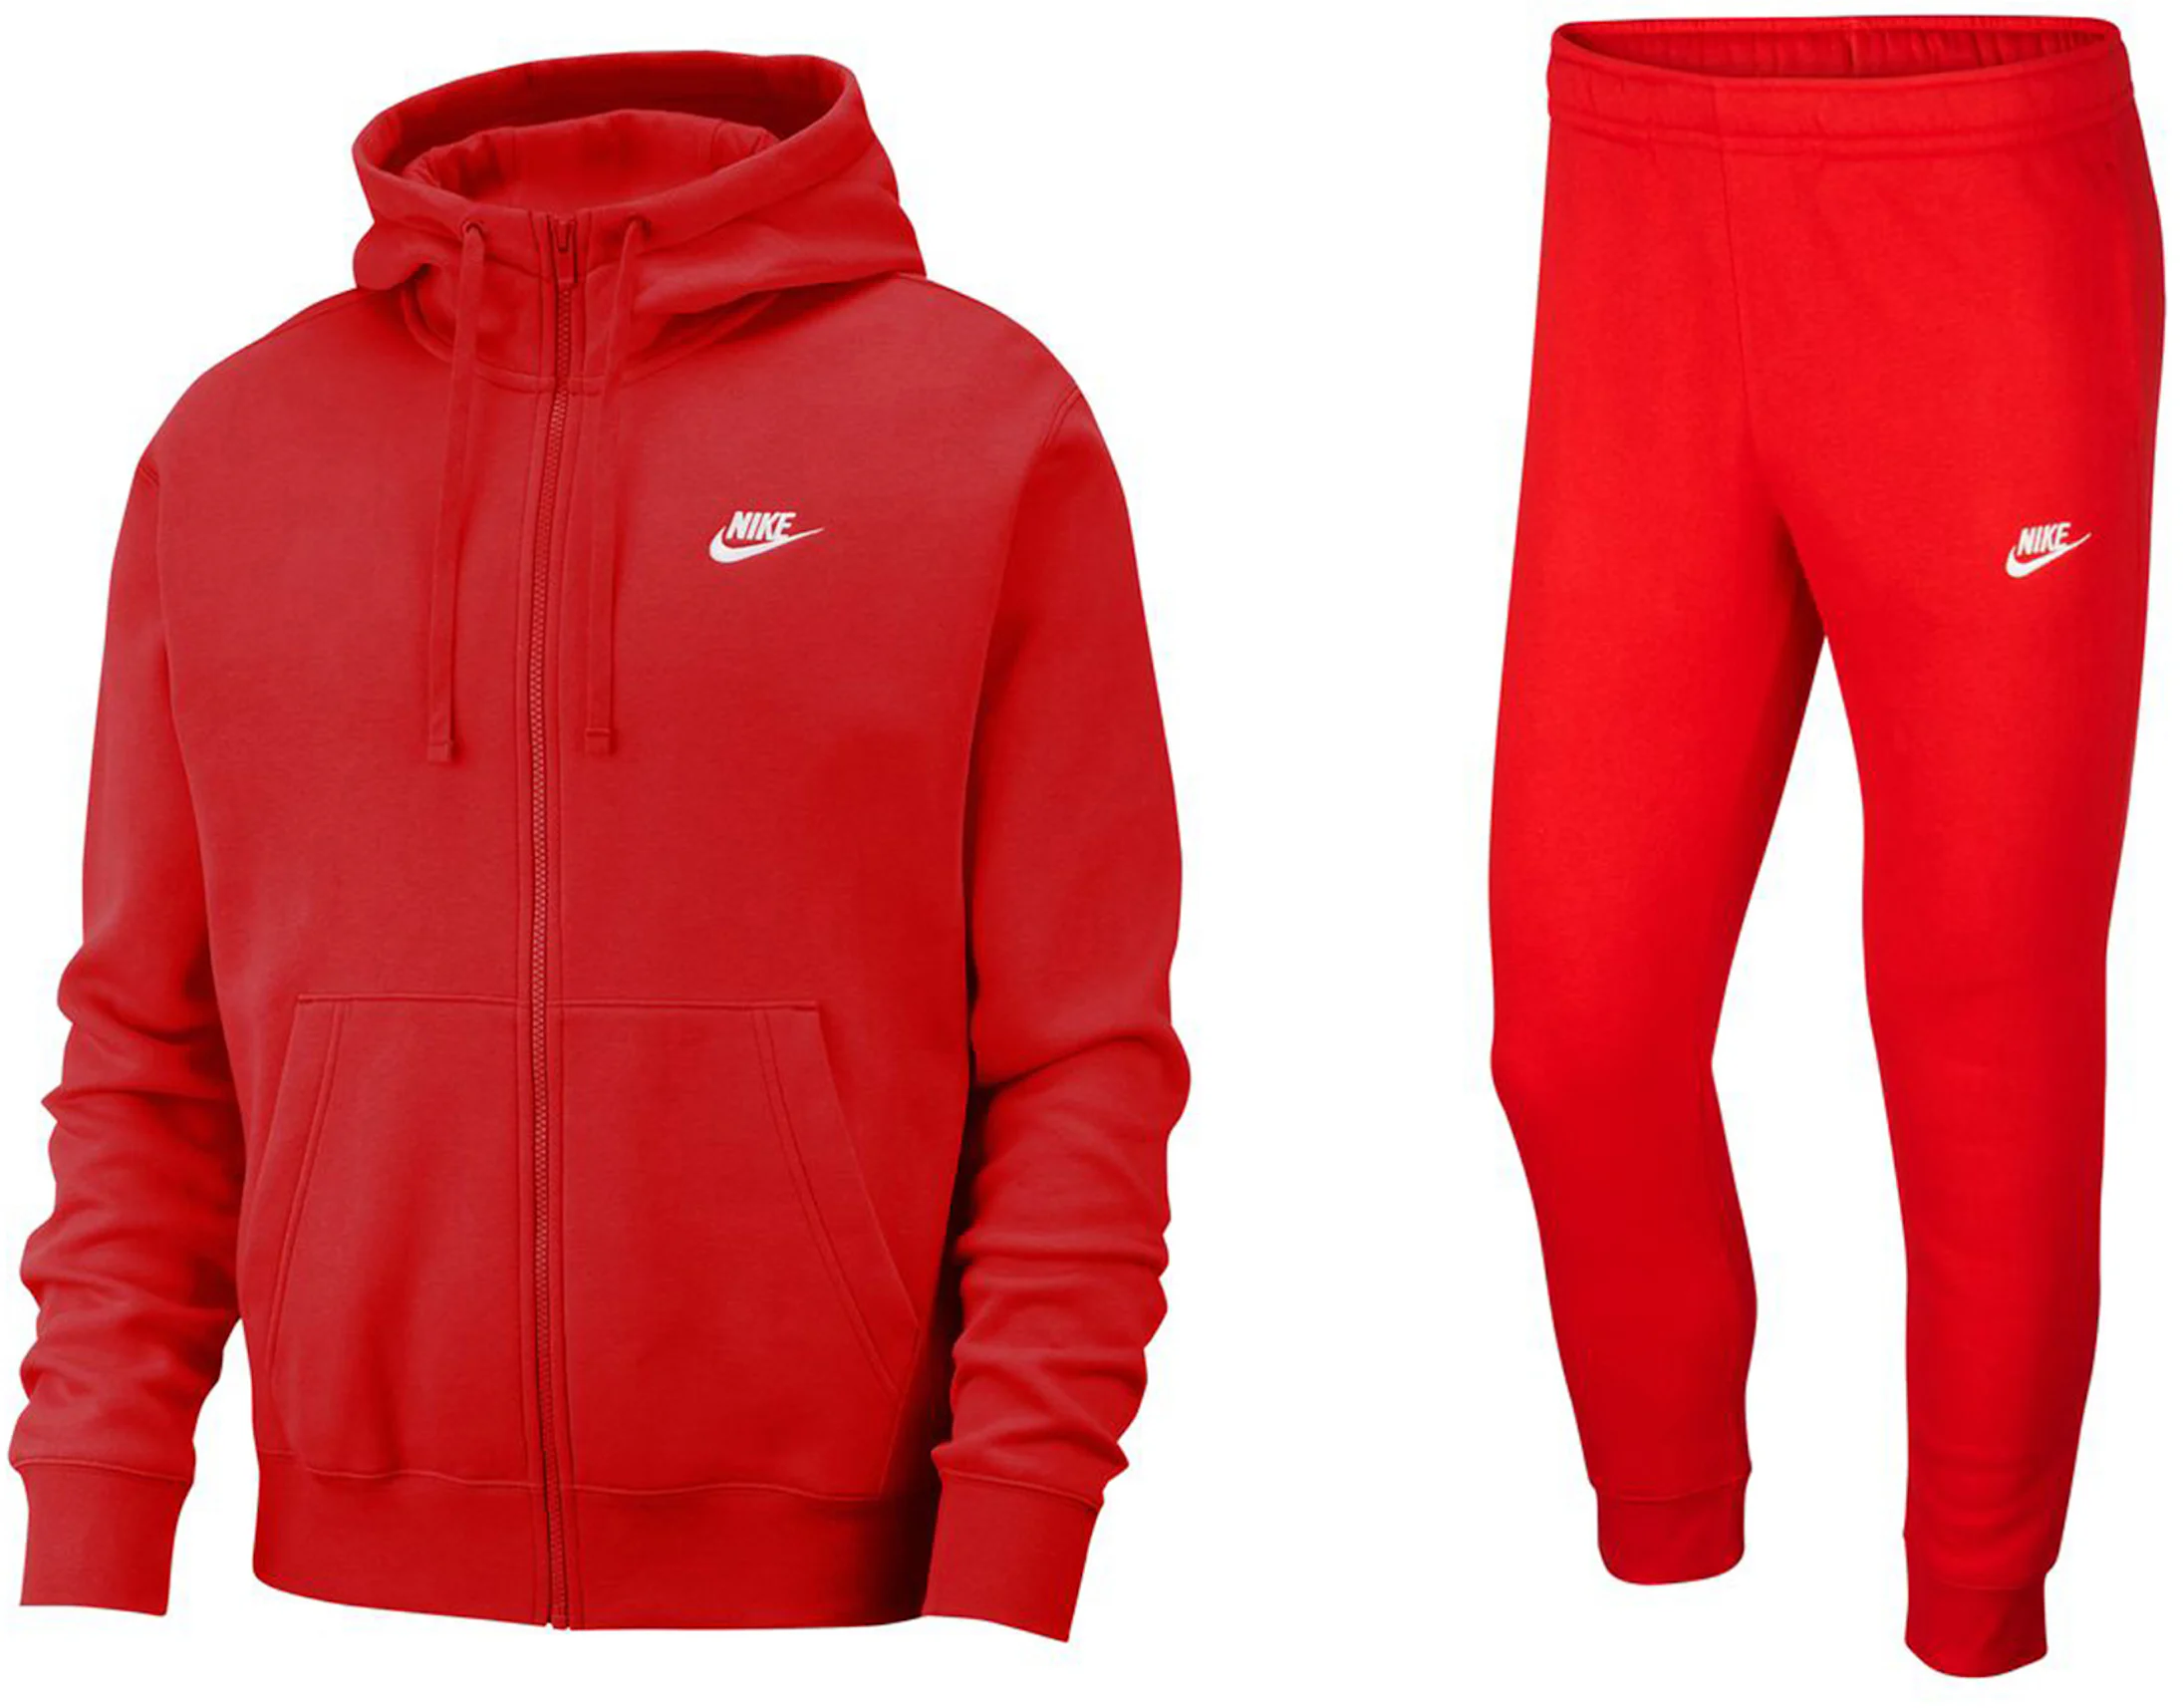 Nike Sportswear Tech Fleece Full-Zip Hoodie & Joggers Set Light